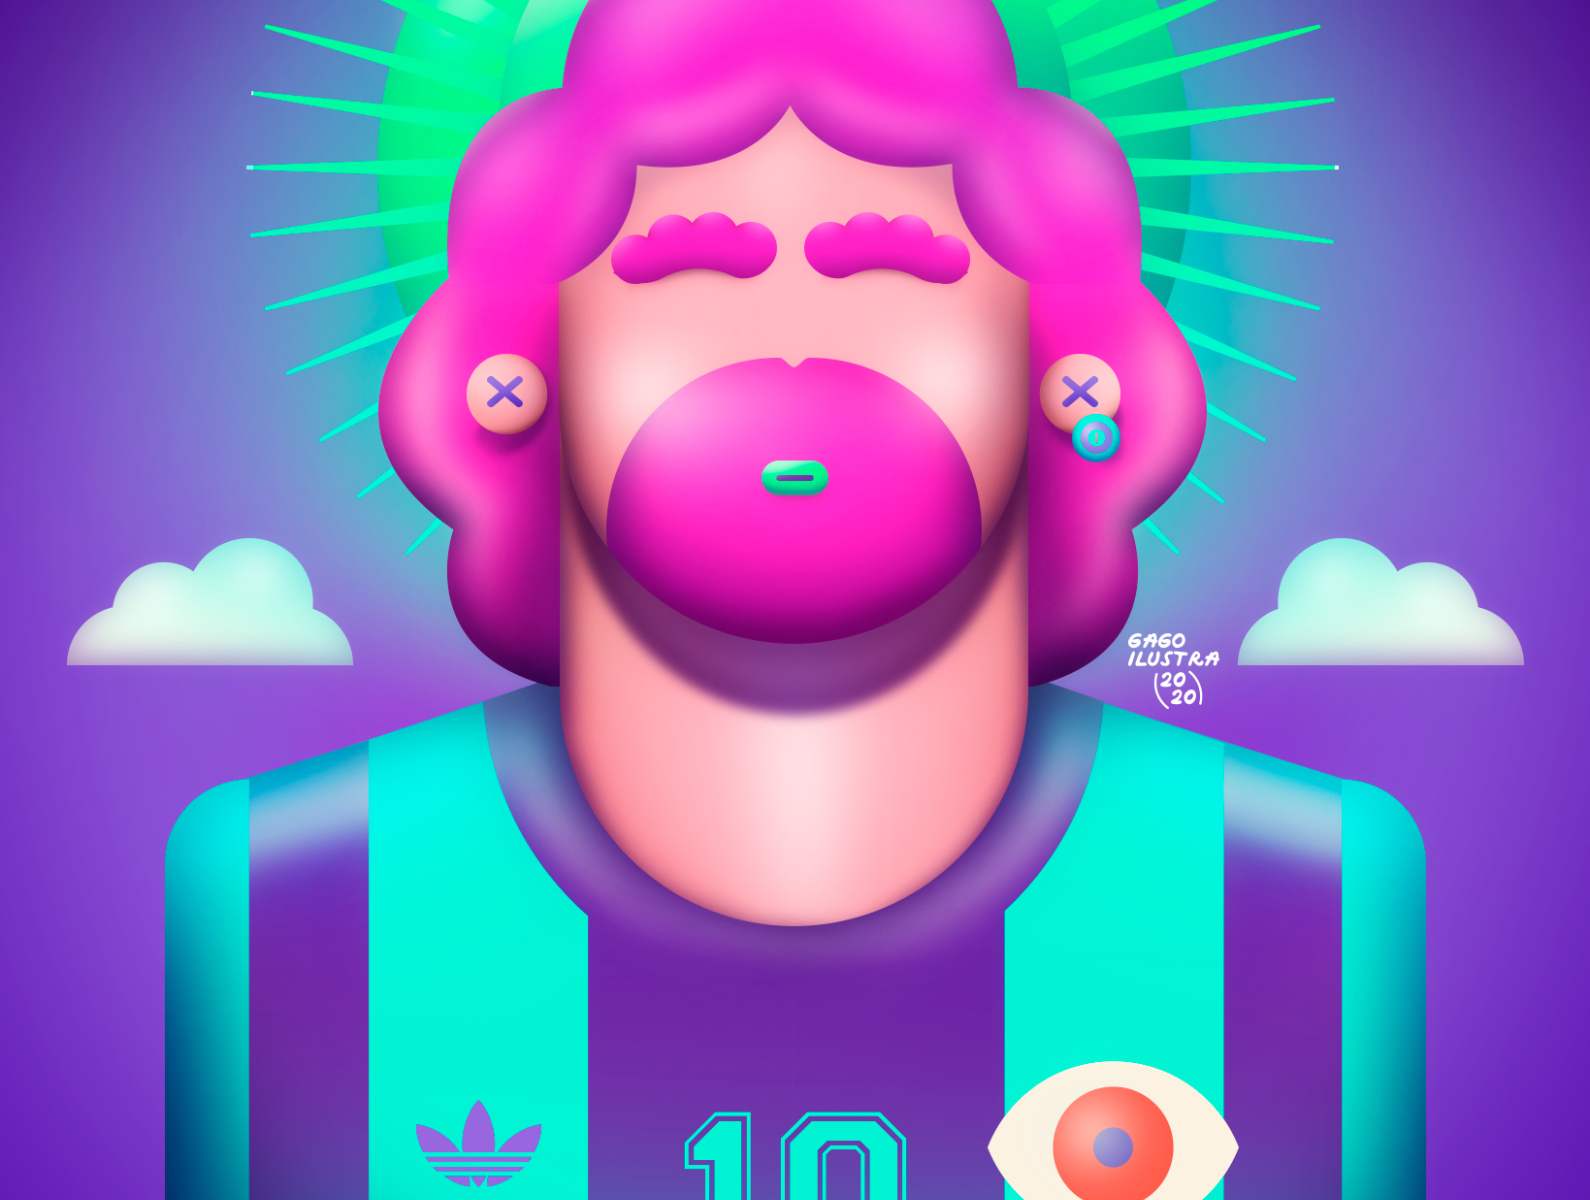 AD10S 3d d10s digital artist digital arts digital painting digitalart fanart futbol maradona soccer